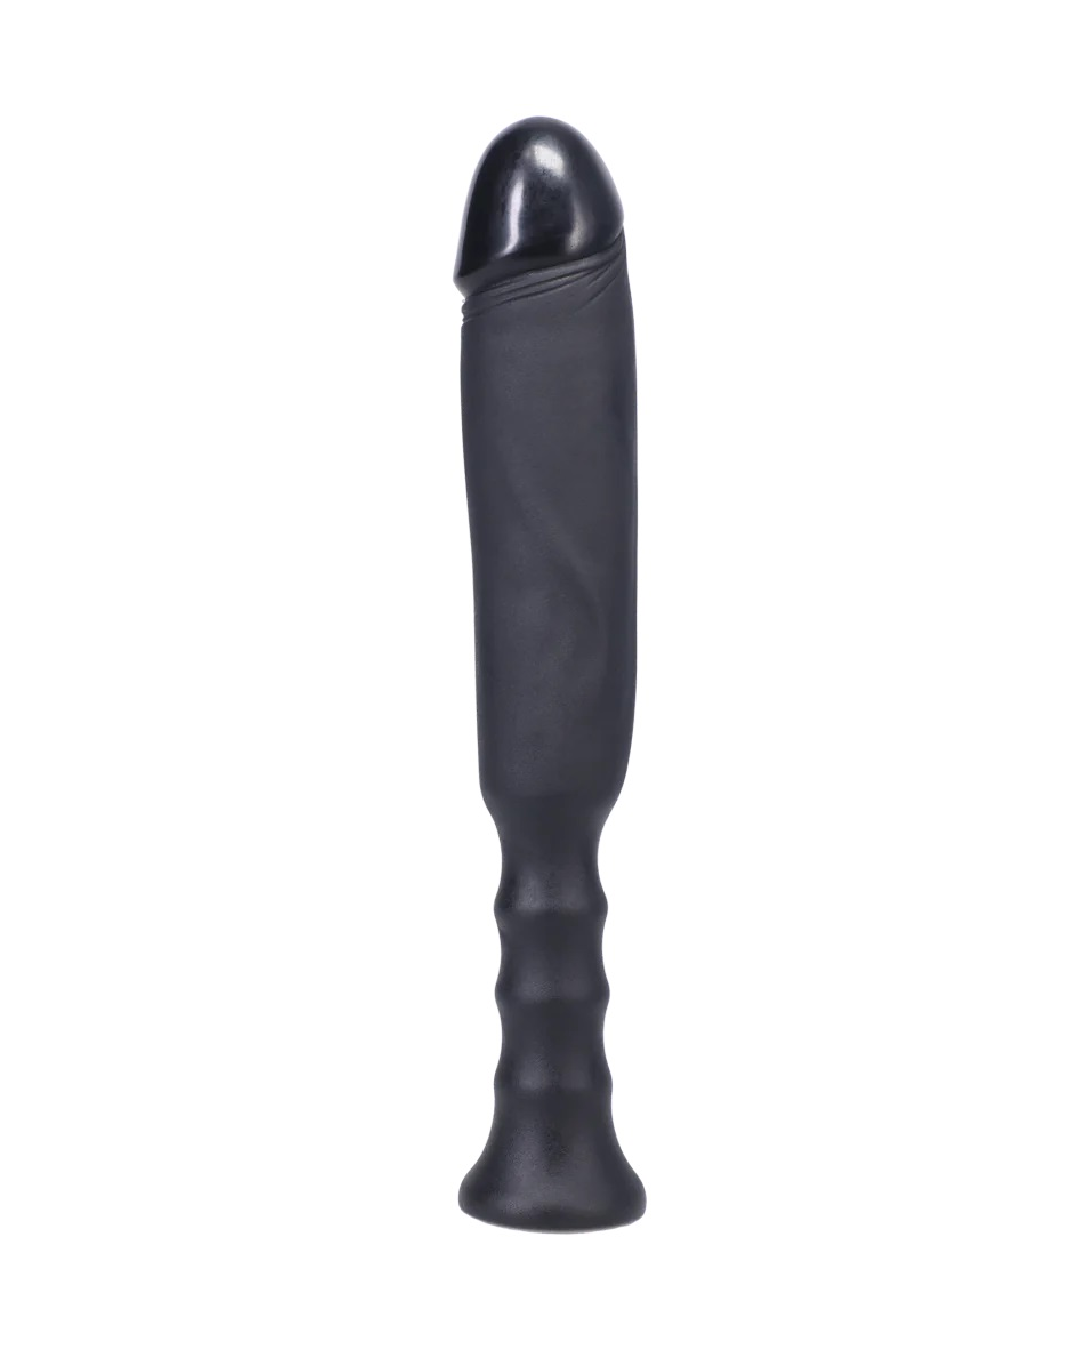 Anaconda 7 Inch Silicone Dildo with Grip Handle - Black